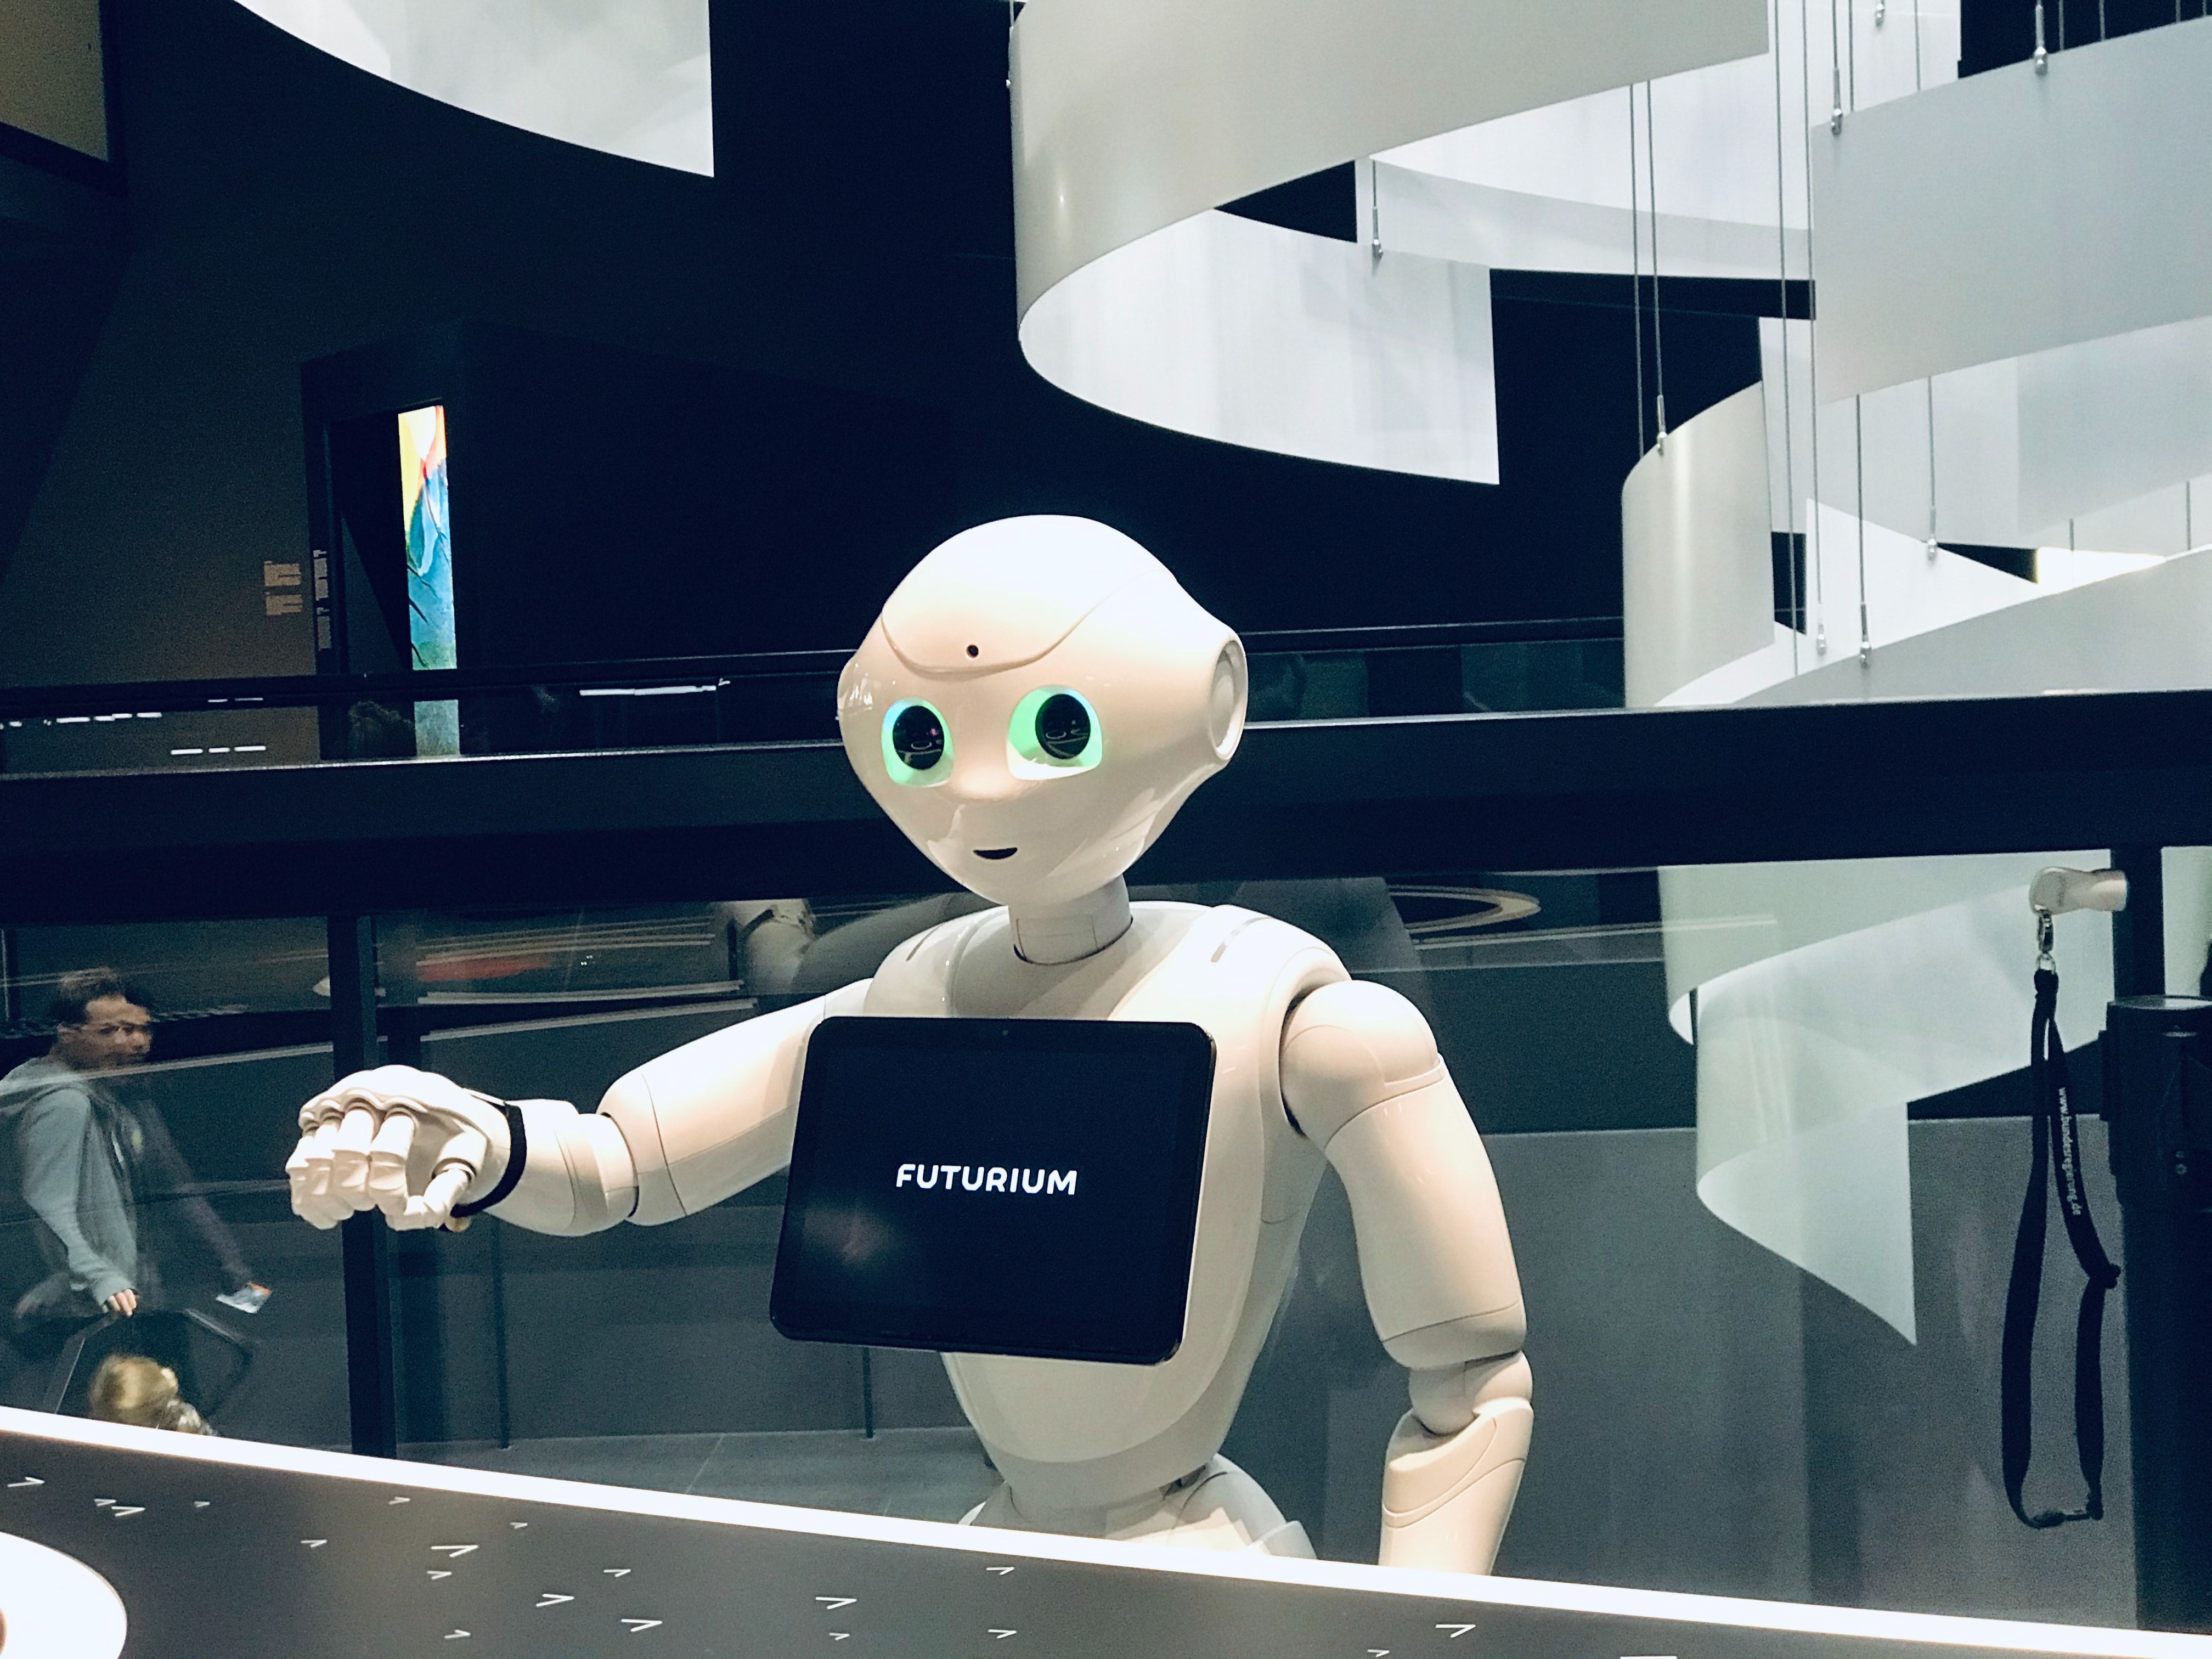 An AI robot